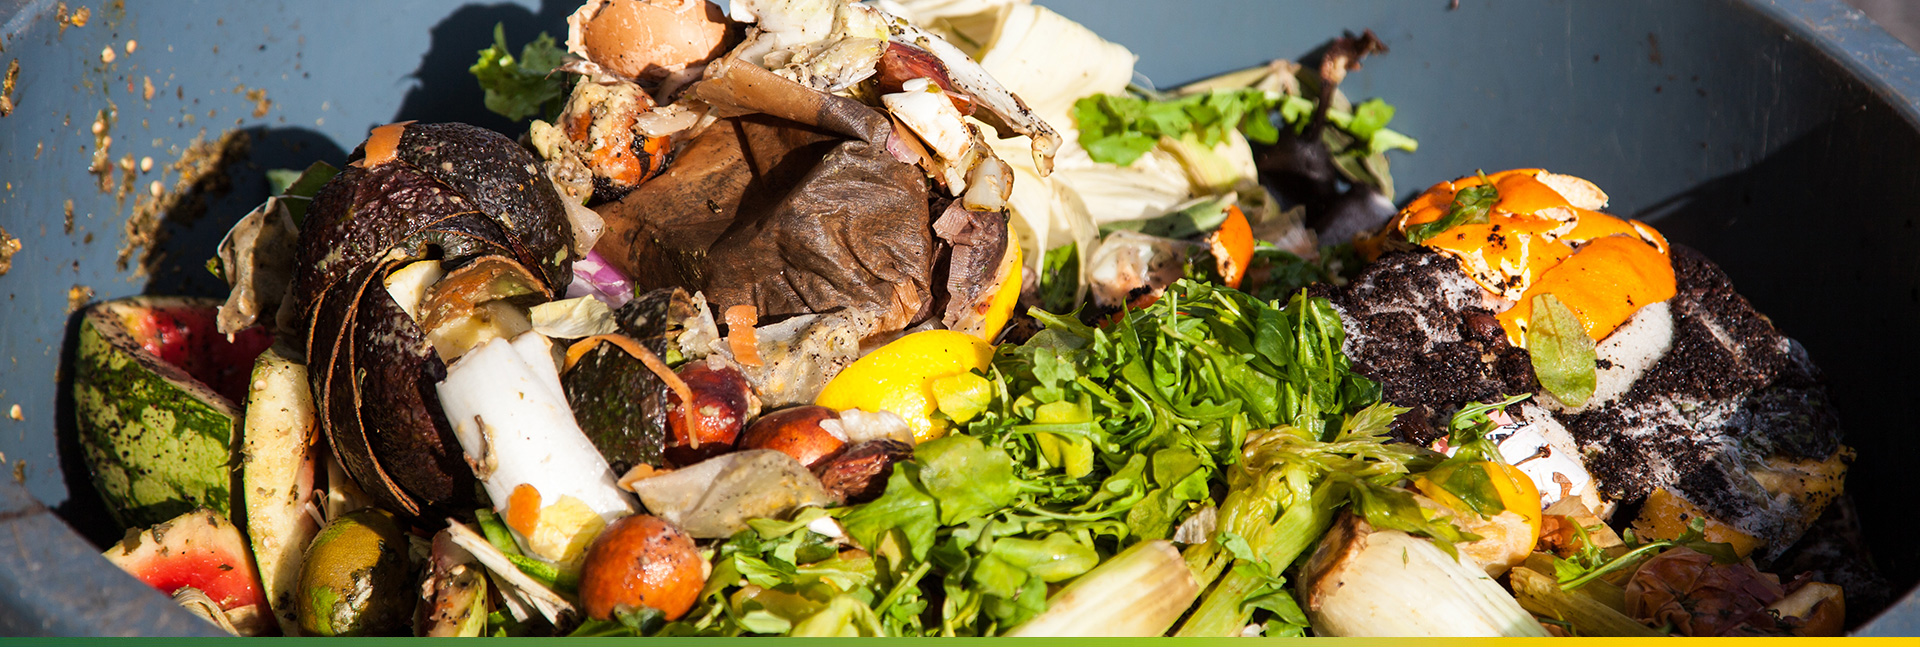 GFL Zero Carbon - Food Waste